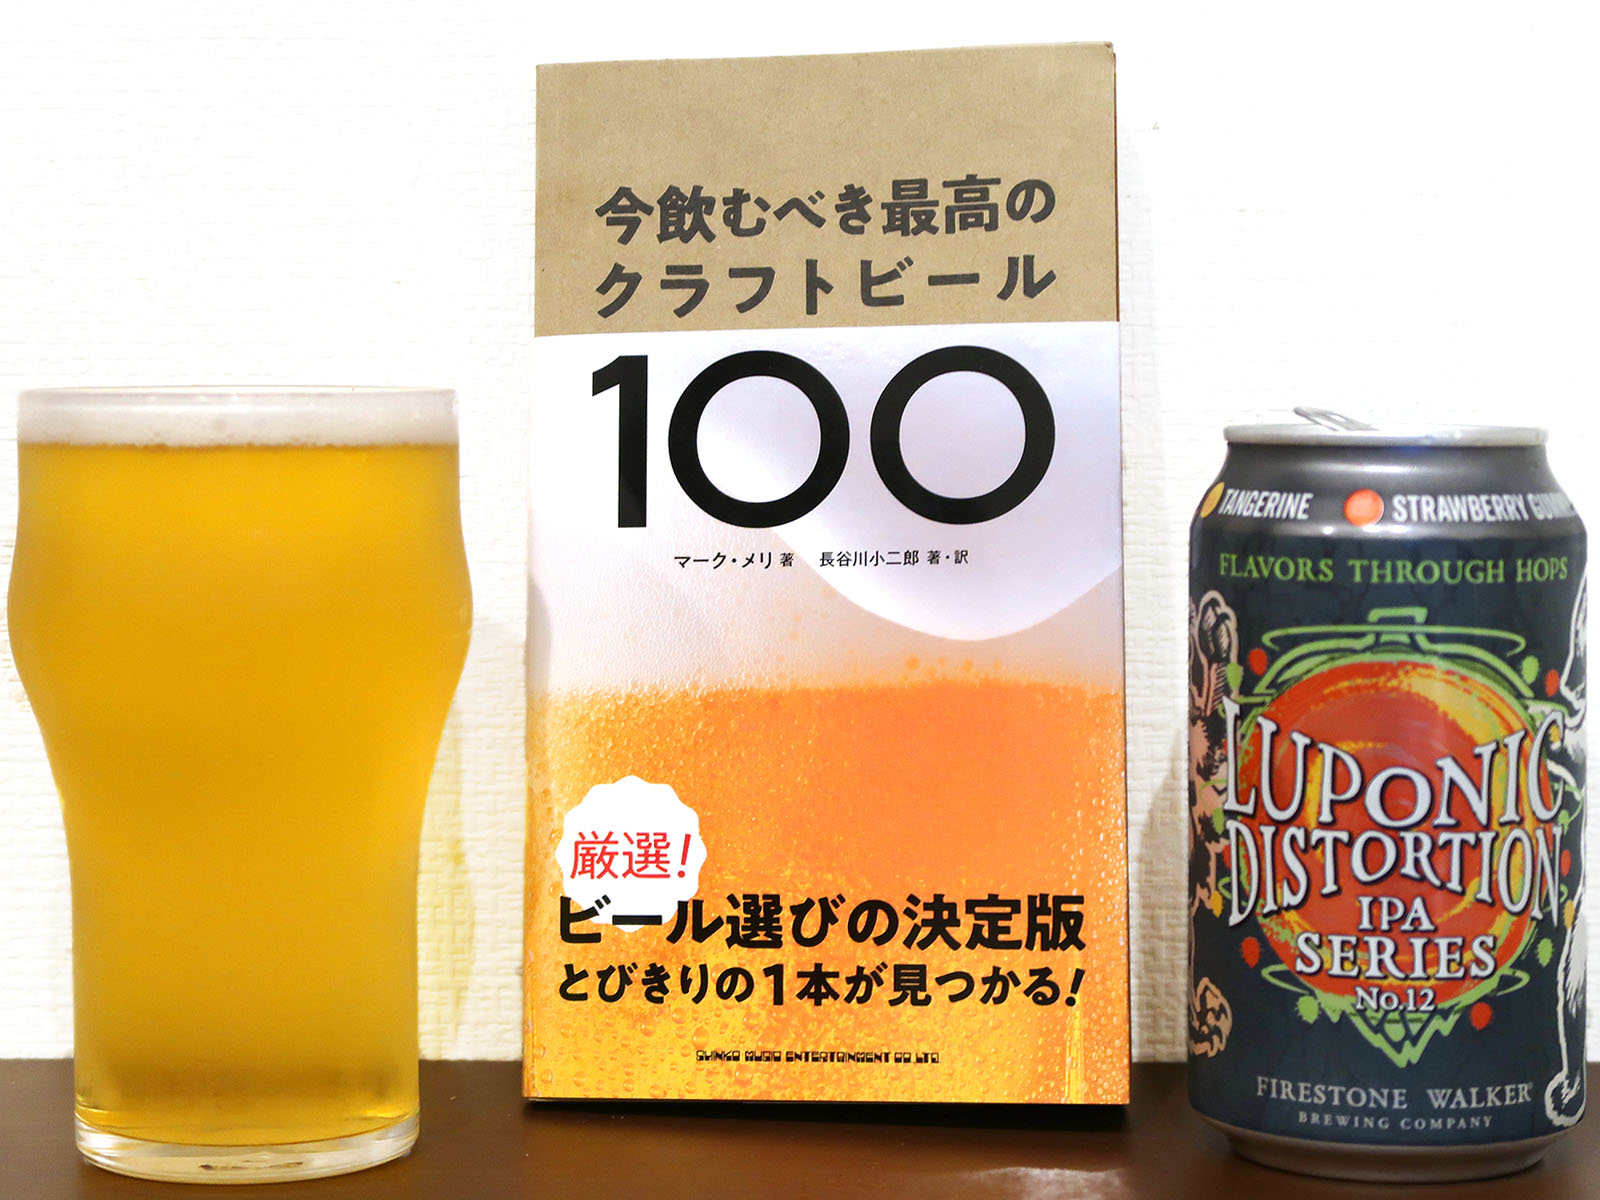 クラフトビールのガイドブック『今飲むべき最高のクラフトビール100』